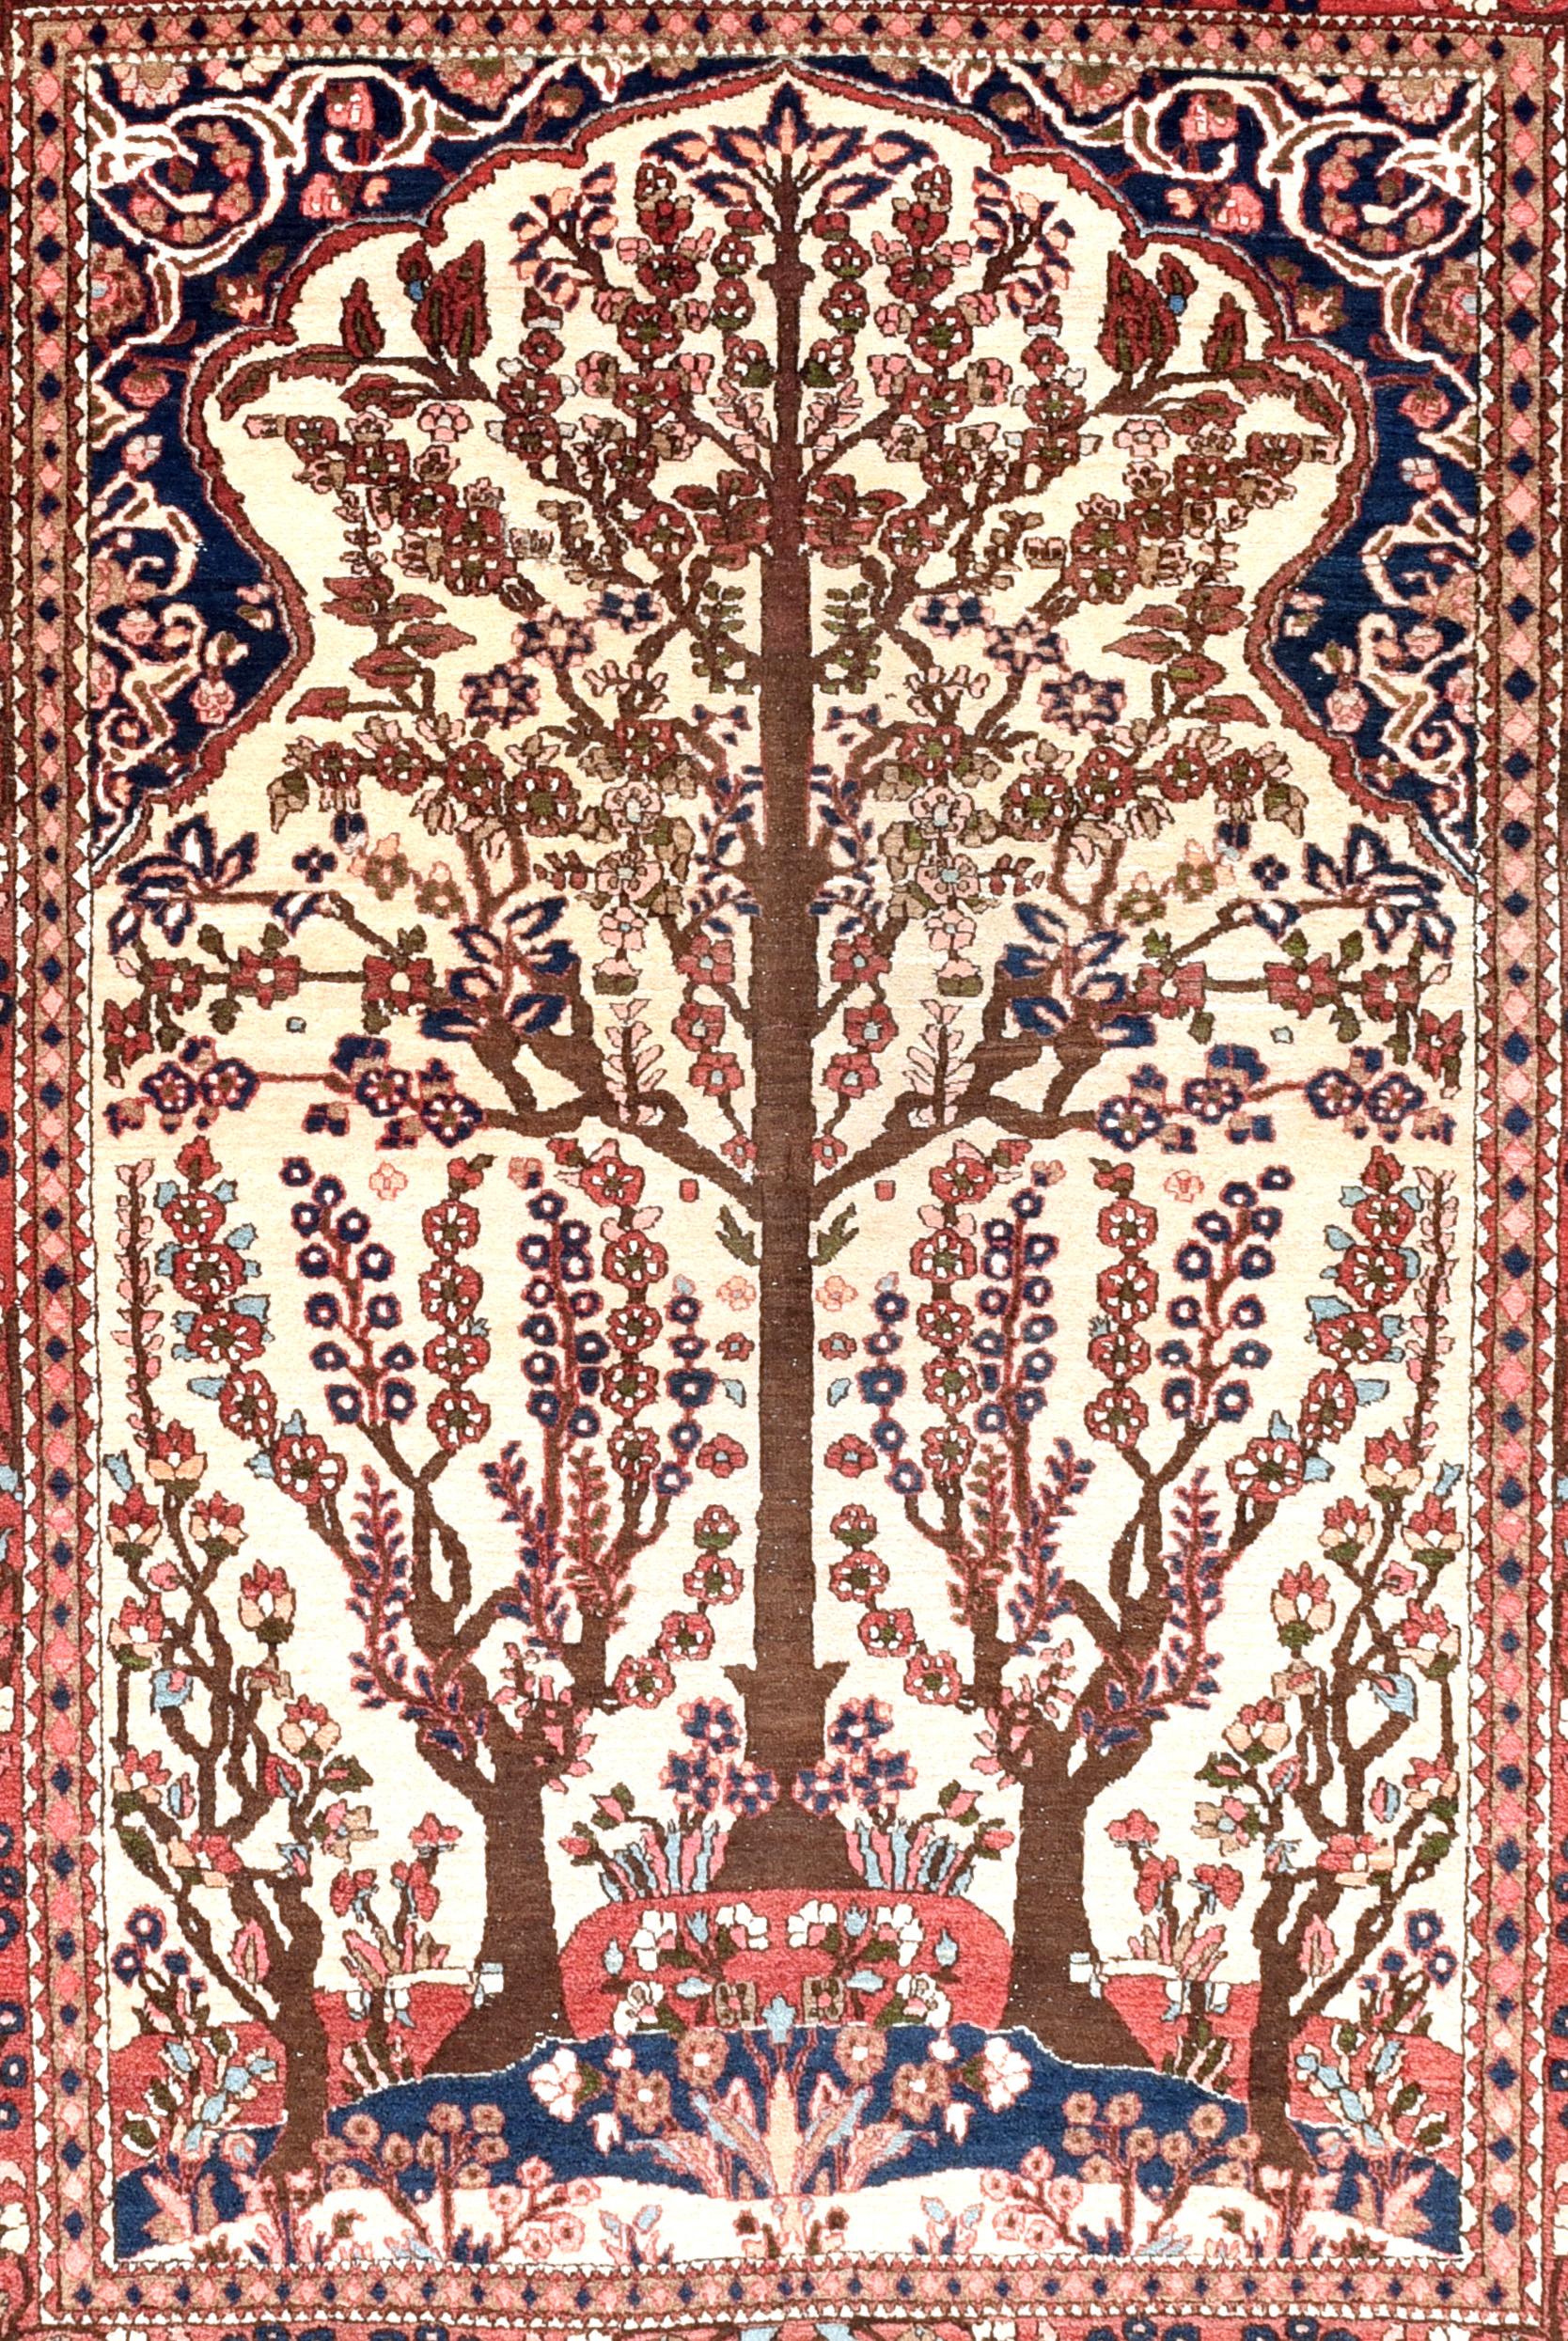 La ville iranienne d'Ispahan est depuis longtemps l'un des centres de production du célèbre tapis persan (ou carpette). Les tapis Isfahani sont réputés pour leur grande qualité. L'atelier le plus célèbre d'Ispahan est le Seirafian. En Europe, ils